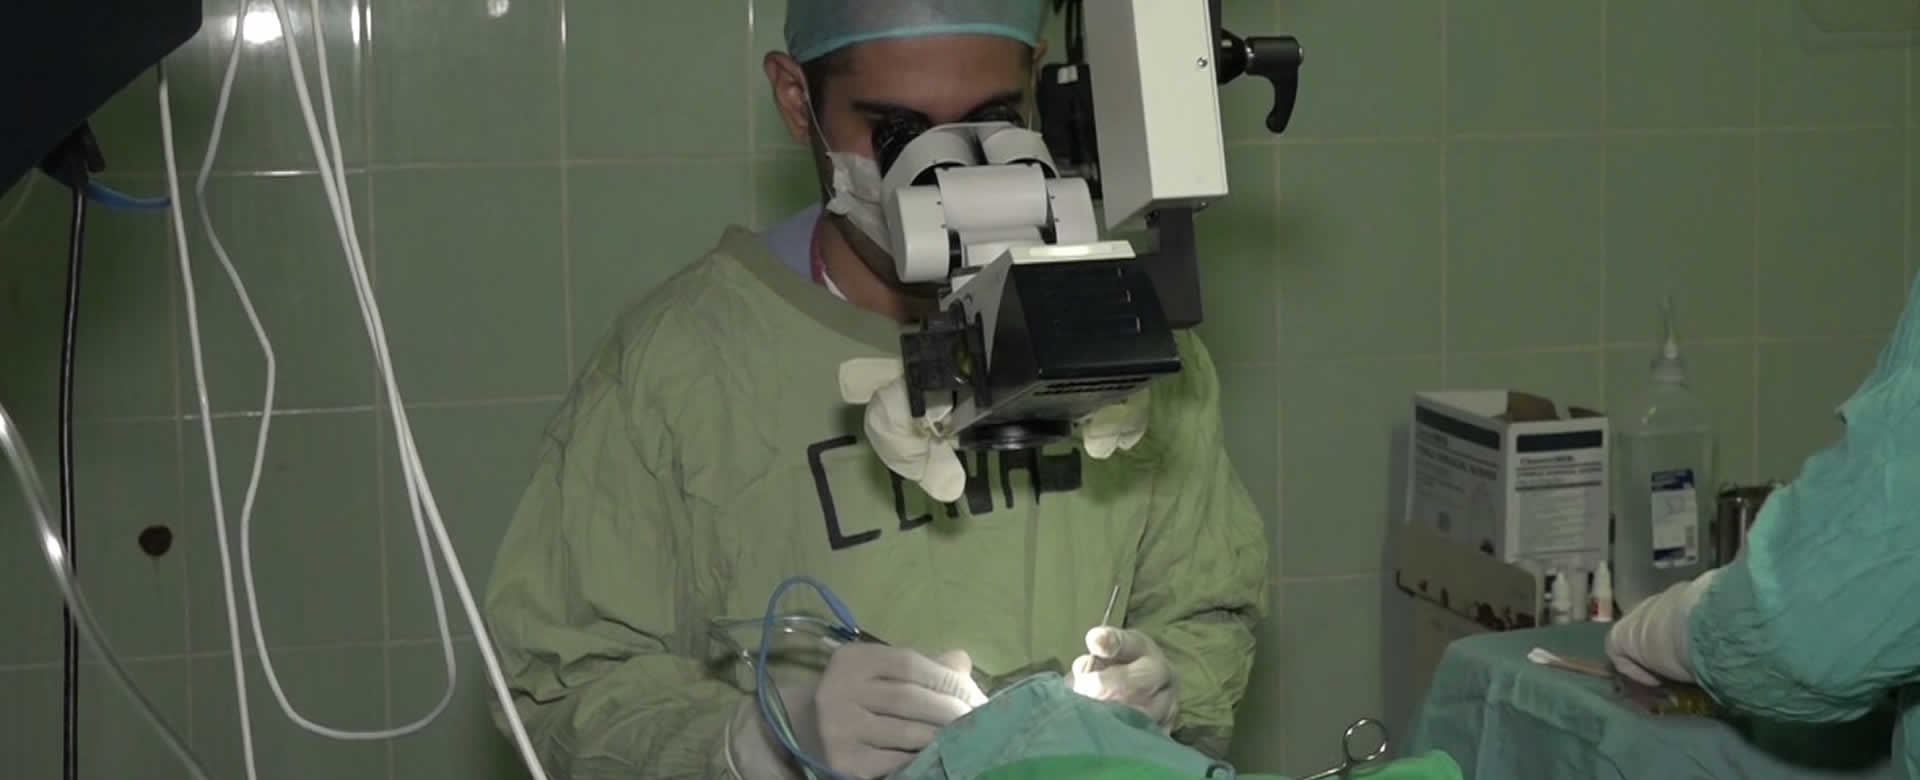 CENAO realiza Jornada de cirugía de cataratas con la técnica de facoemulsificación